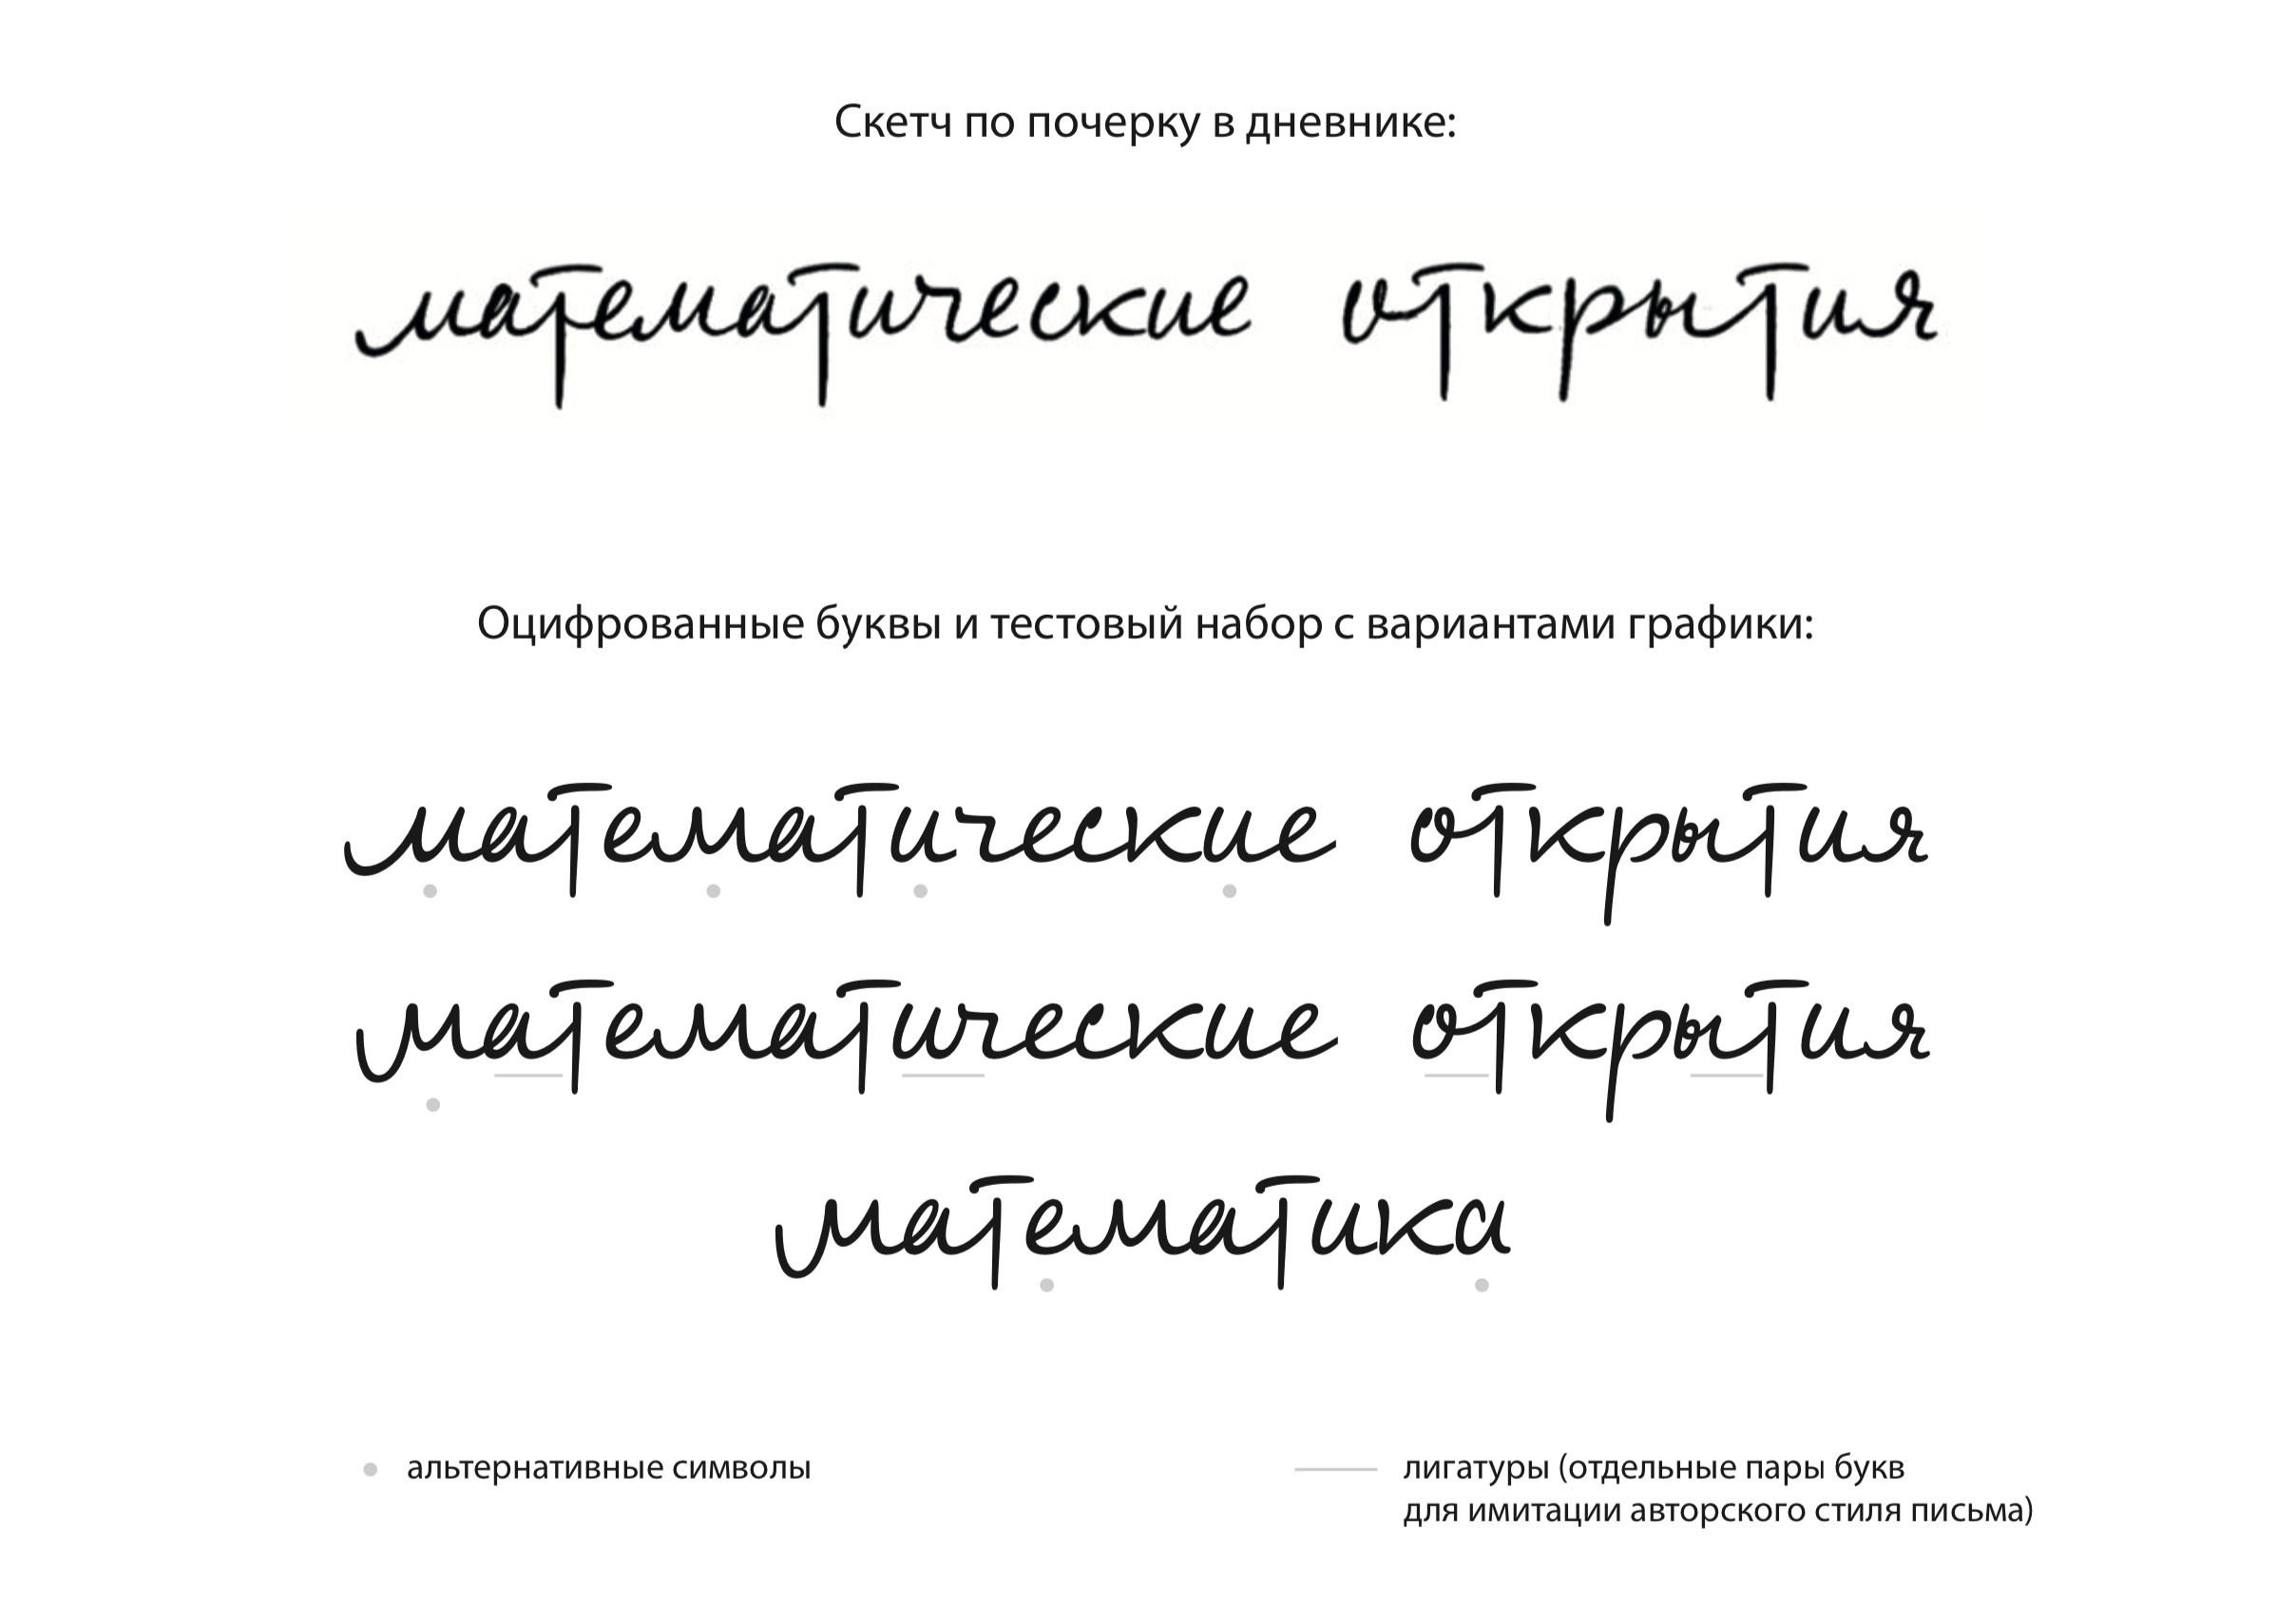 К 120-летнему юбилею Колмогорова: шрифт, воссозданный из почерка учёного